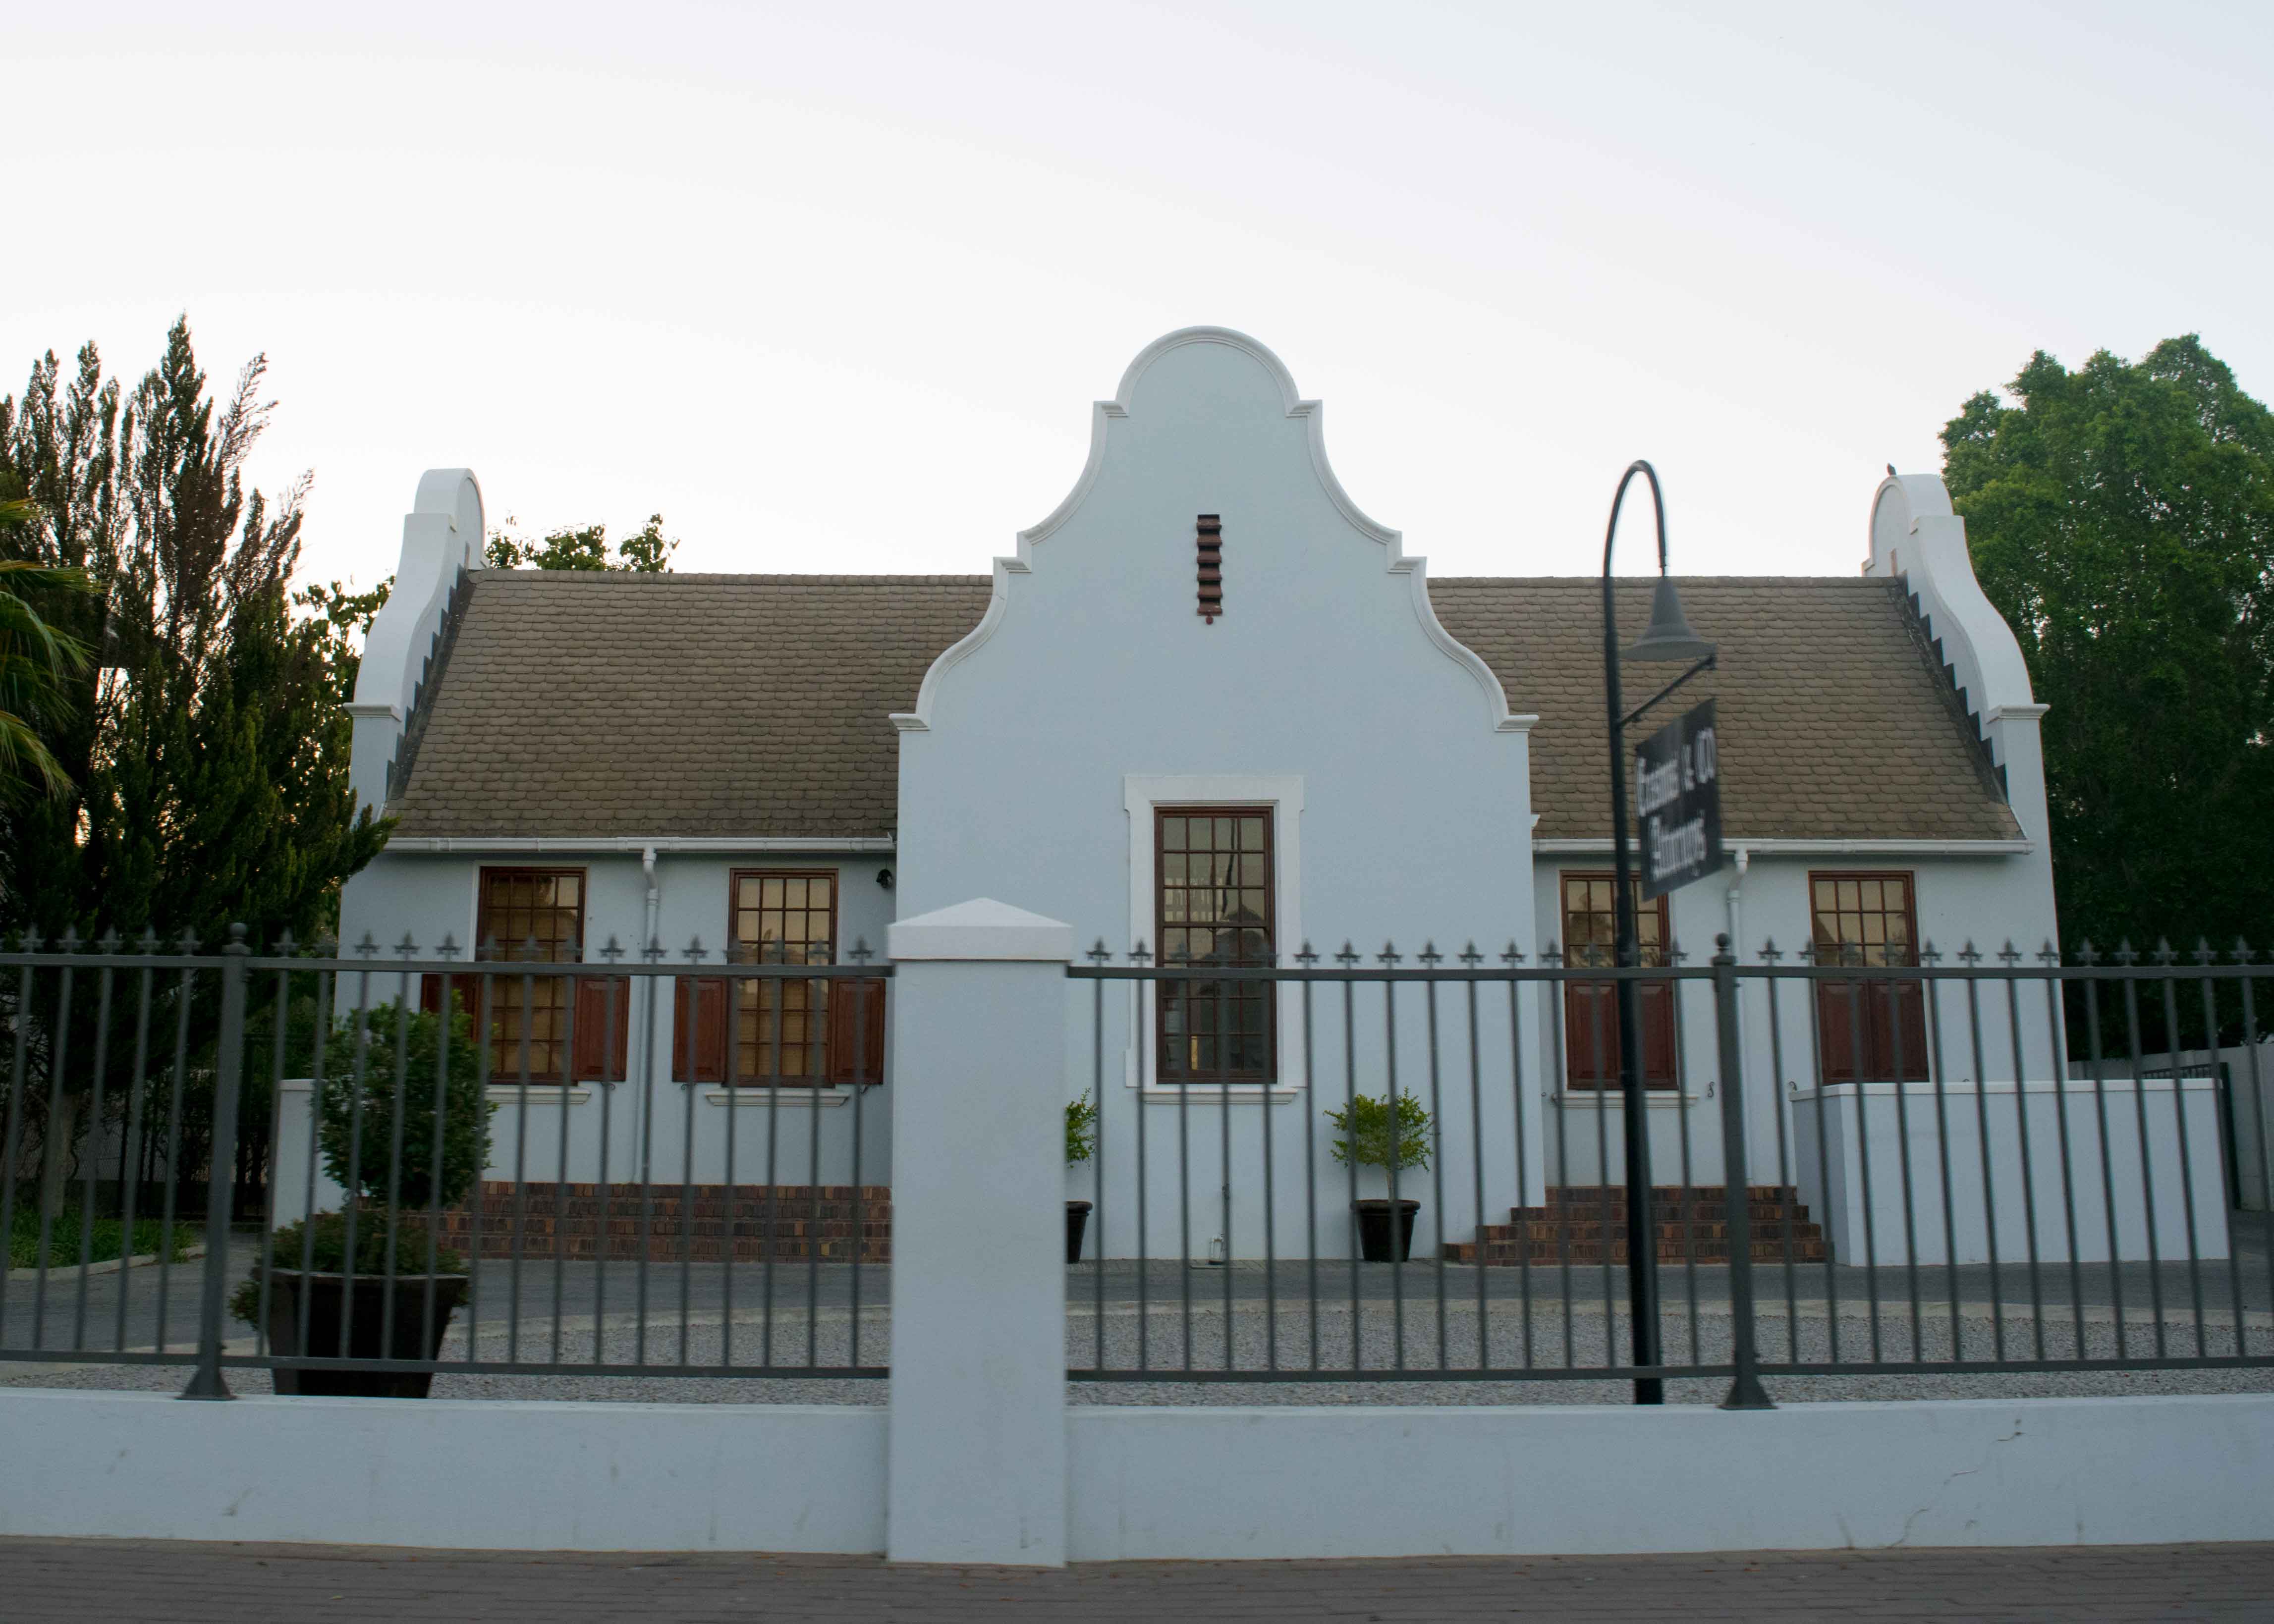 Arquitetura colonial de Clanwilliam. Turismo na África do Sul.